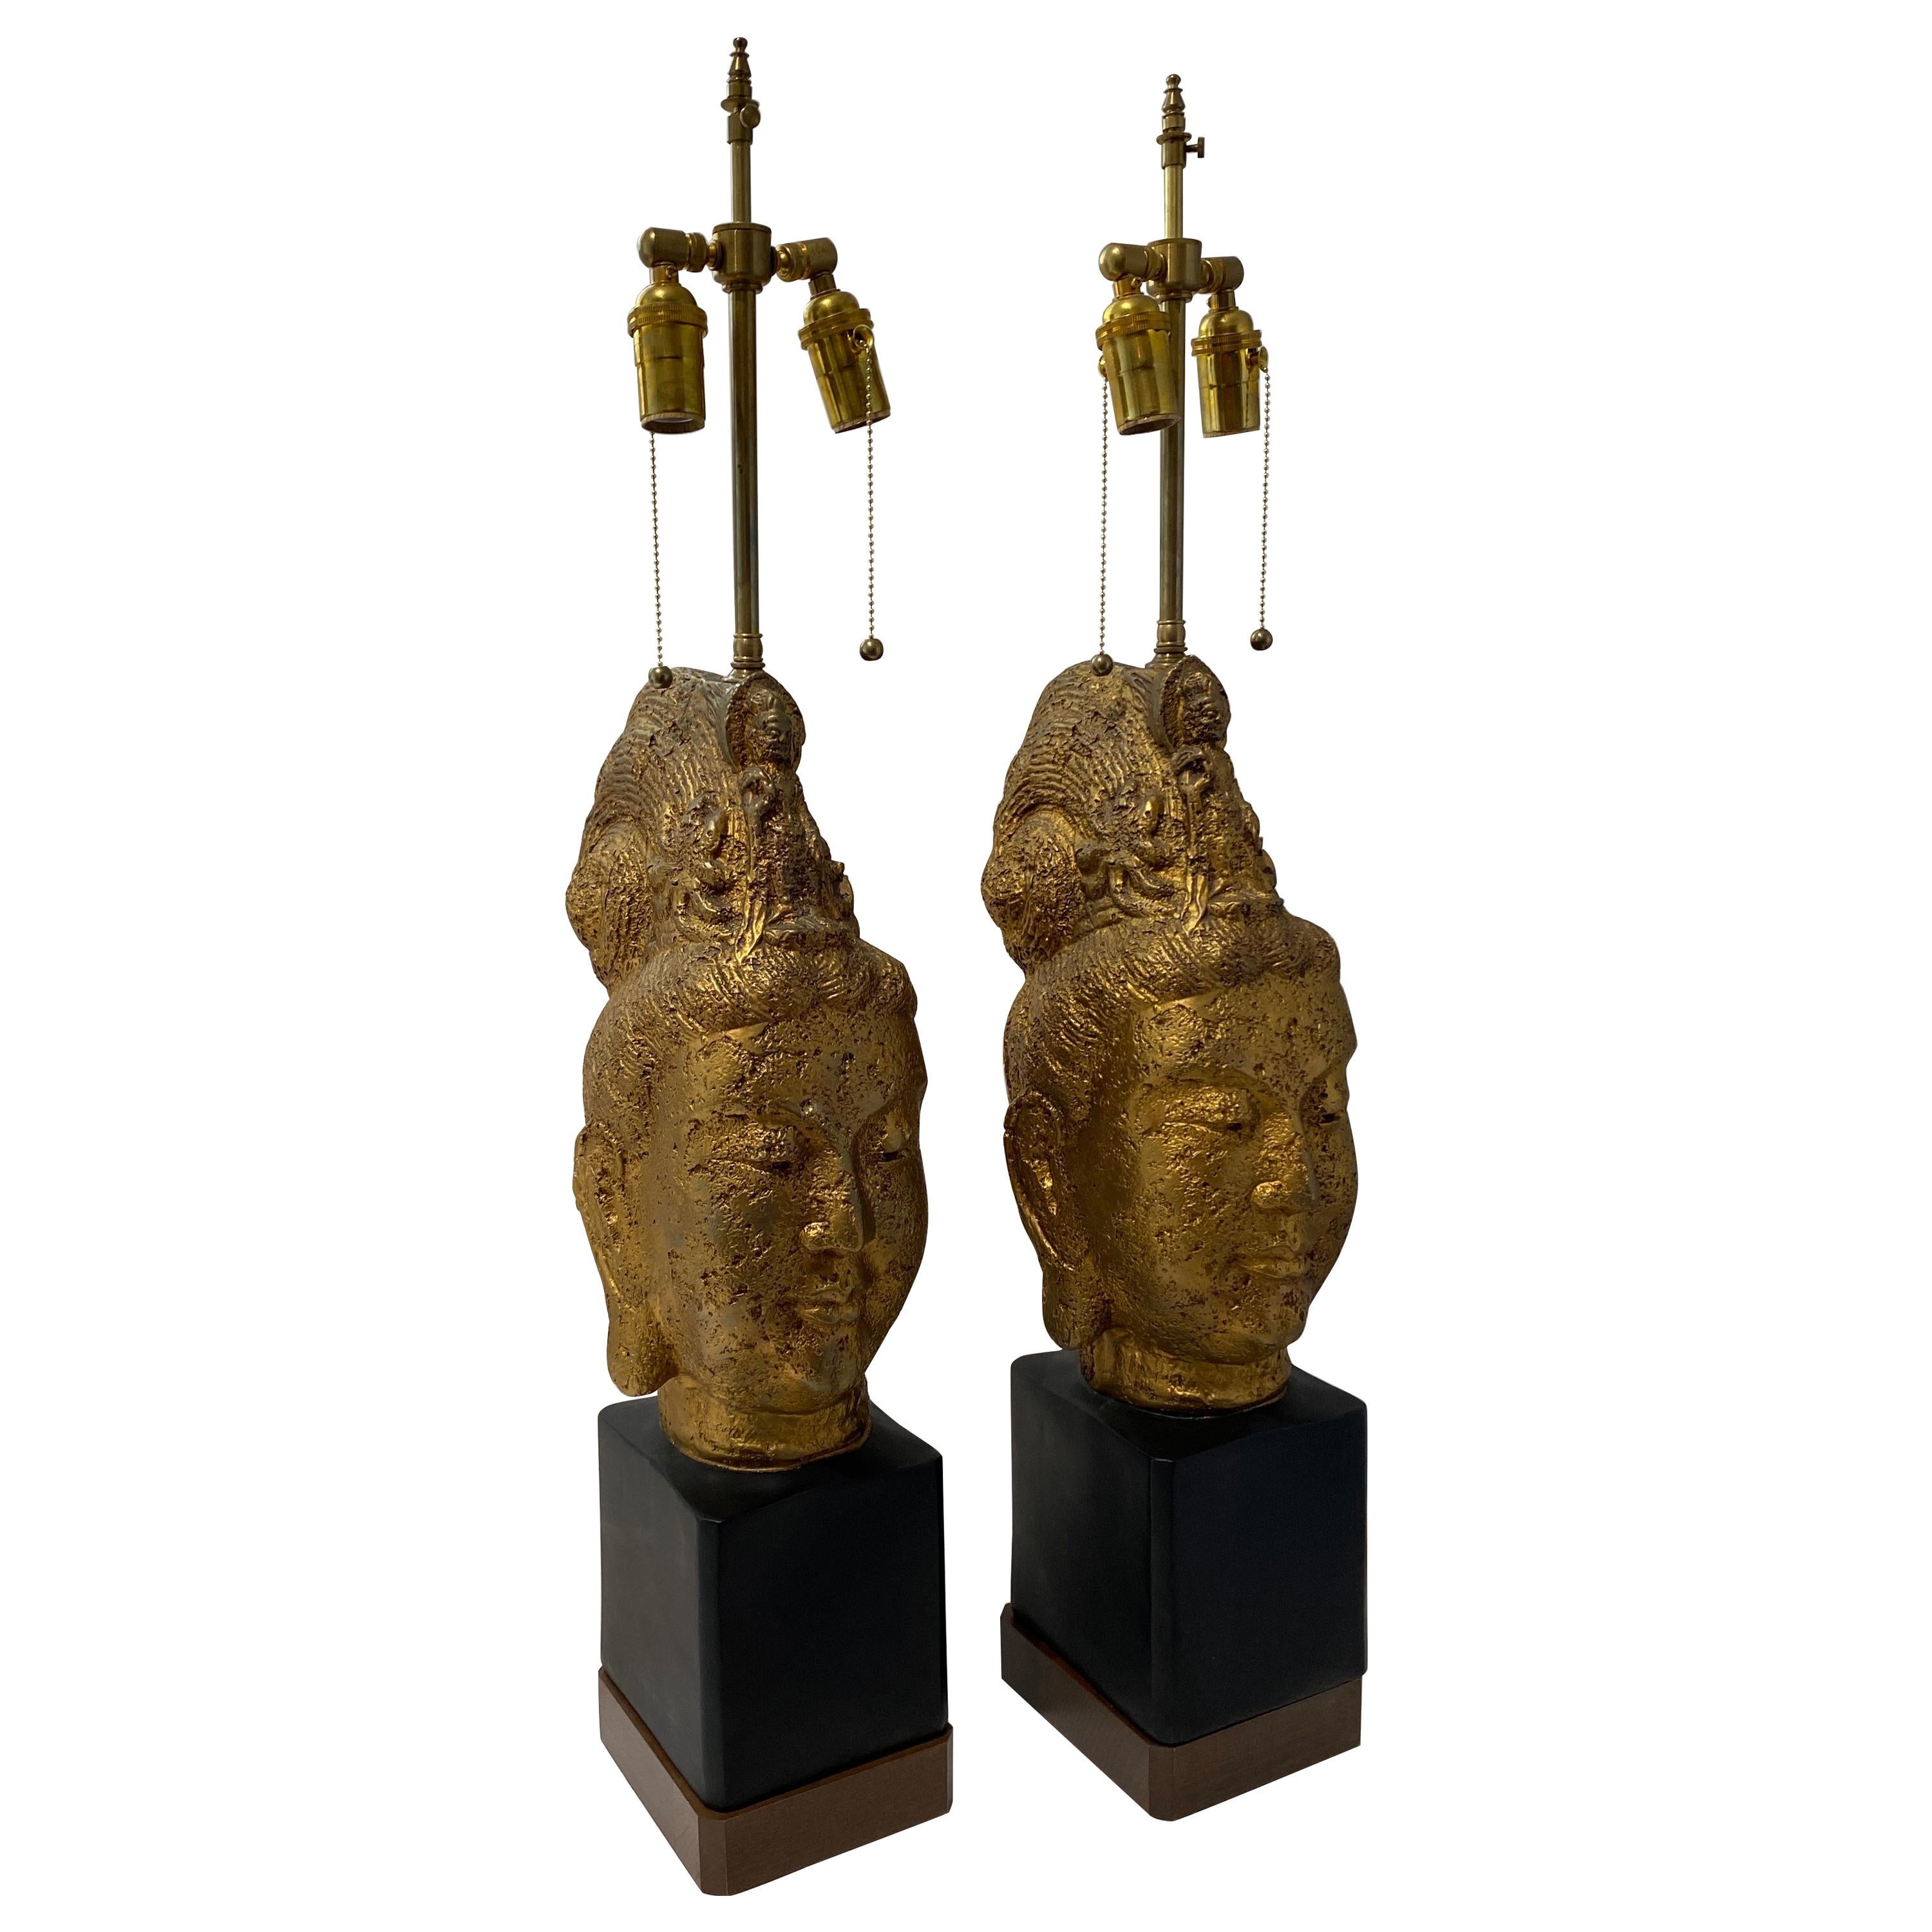 Ein Paar goldene Buddha-Lampen von James Mont für Stiffel Lighting